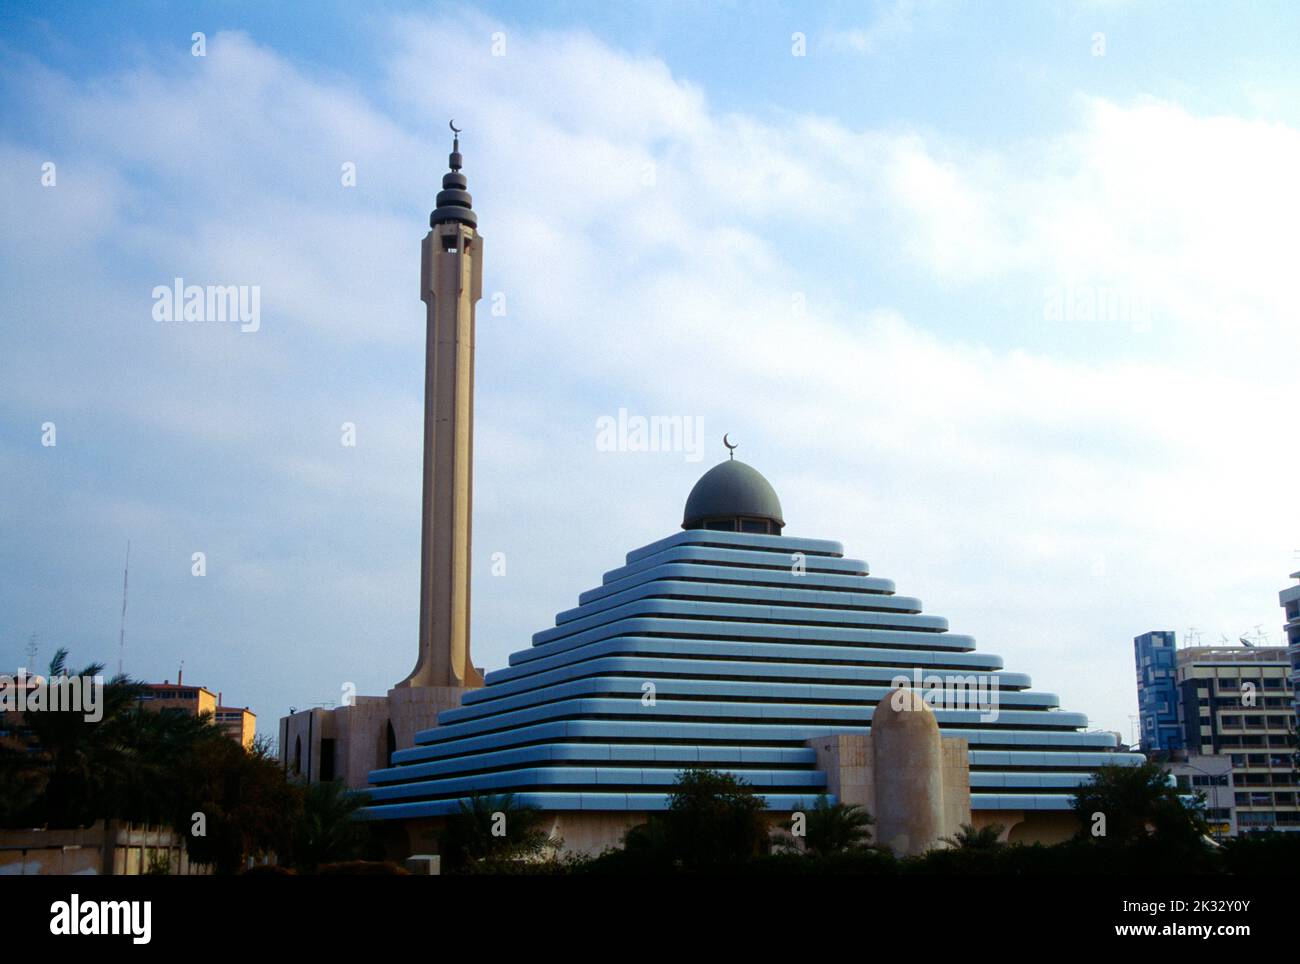 RAS Salmiya Kuwait-Stadt Kuwait Mohammed Nasser el Sabah Moschee (Pyramid Moschee) in den 1980er Jahren gebaut Stockfoto